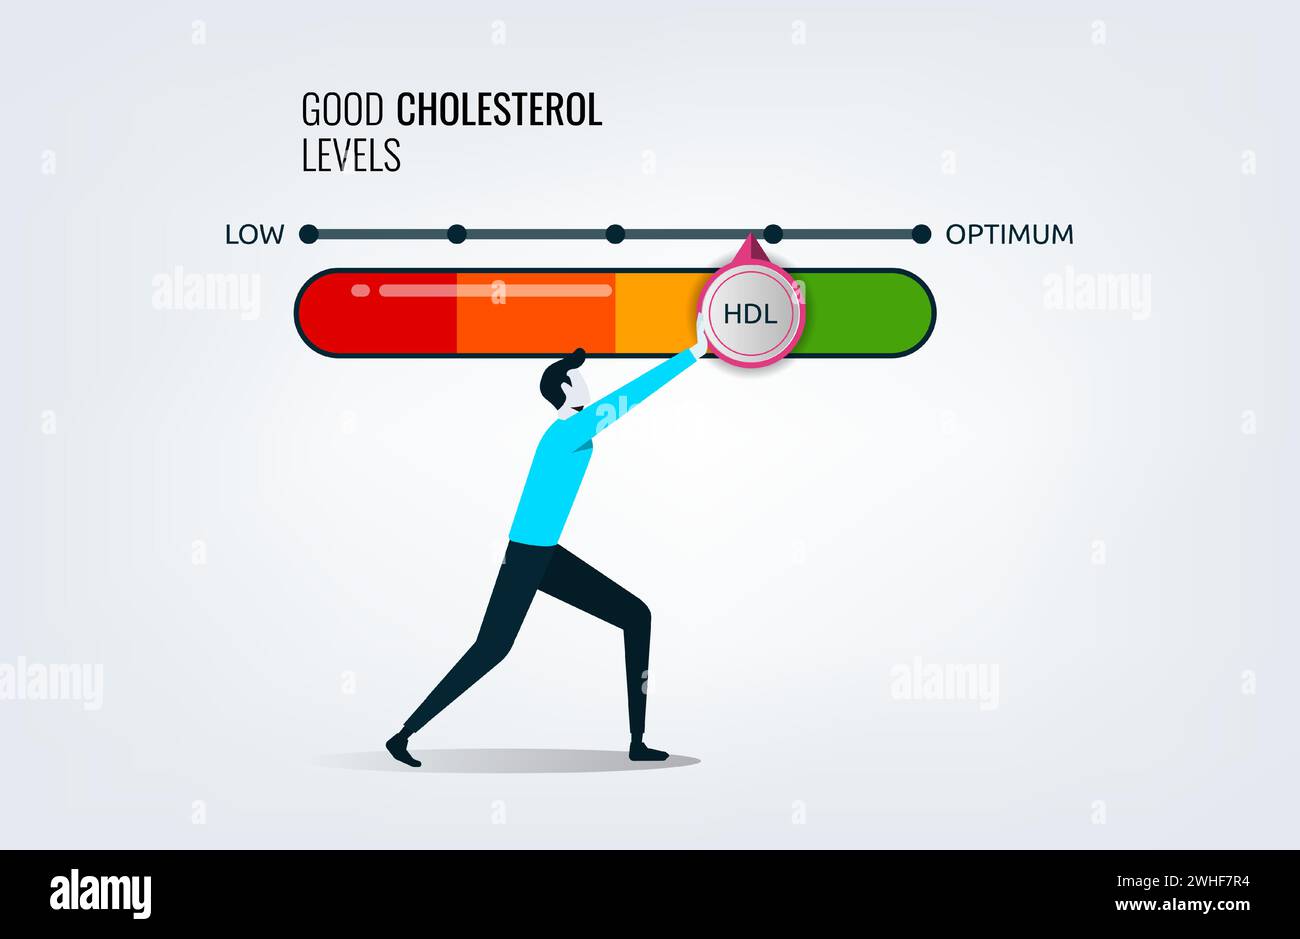 Los niveles de colesterol buenos miden con indicador de flecha para el cuidado de la salud y el análisis de la salud del corazón, un hombre empujando la barra a la posición óptima, estilo de vida dietético Ilustración del Vector